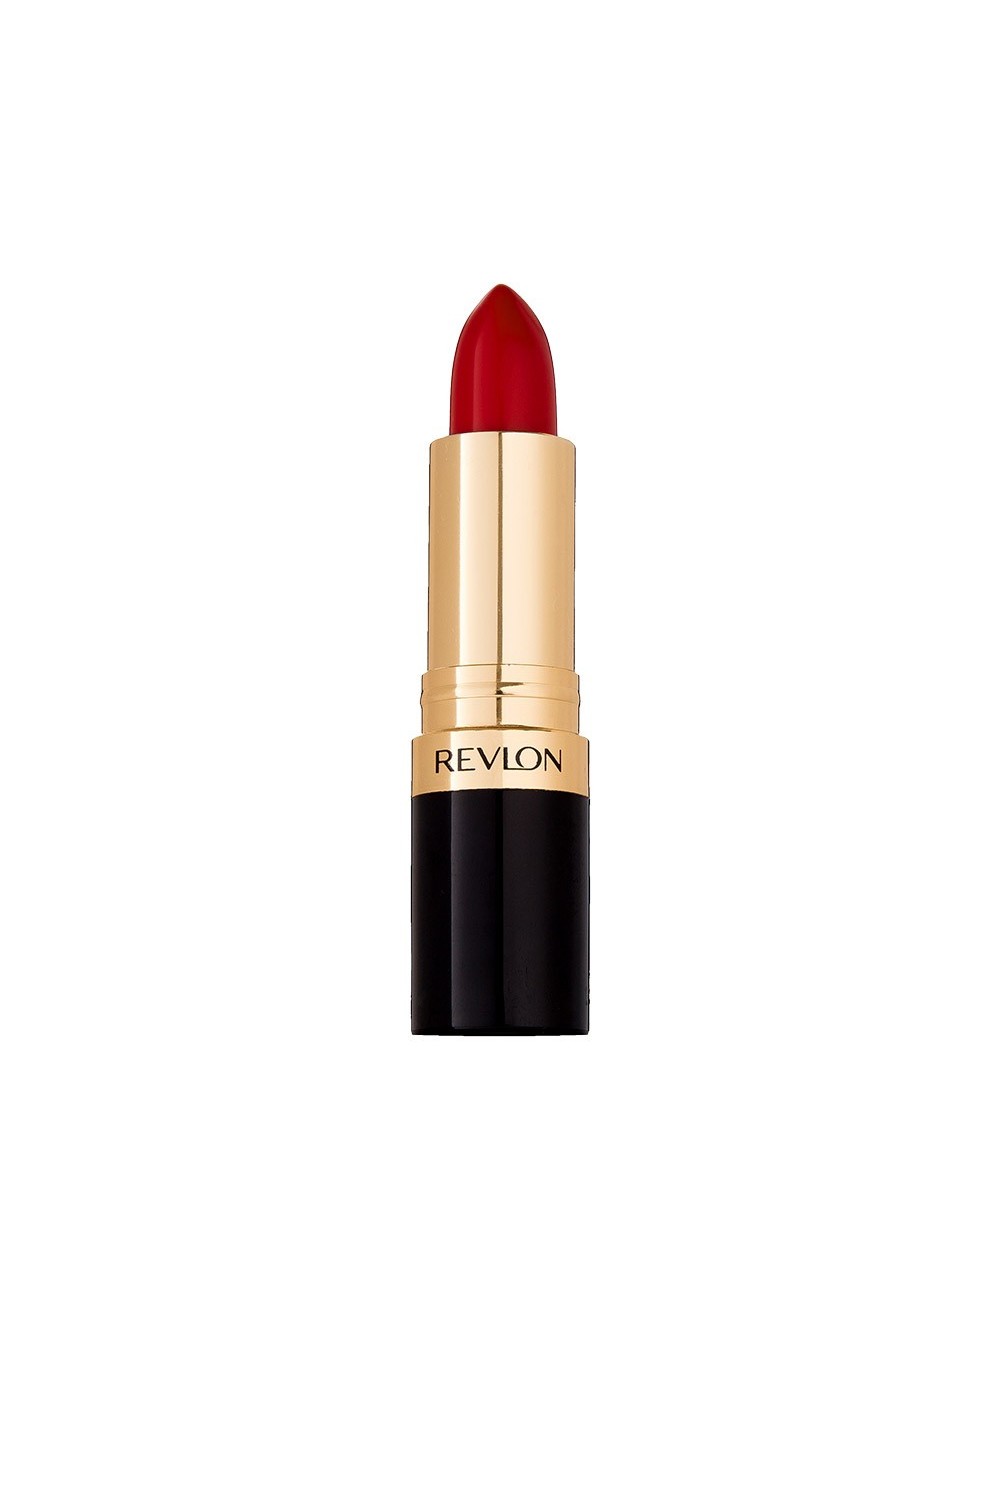 Revlon Super Lustrous Lipstick 740 Pink Velvet 3,7g